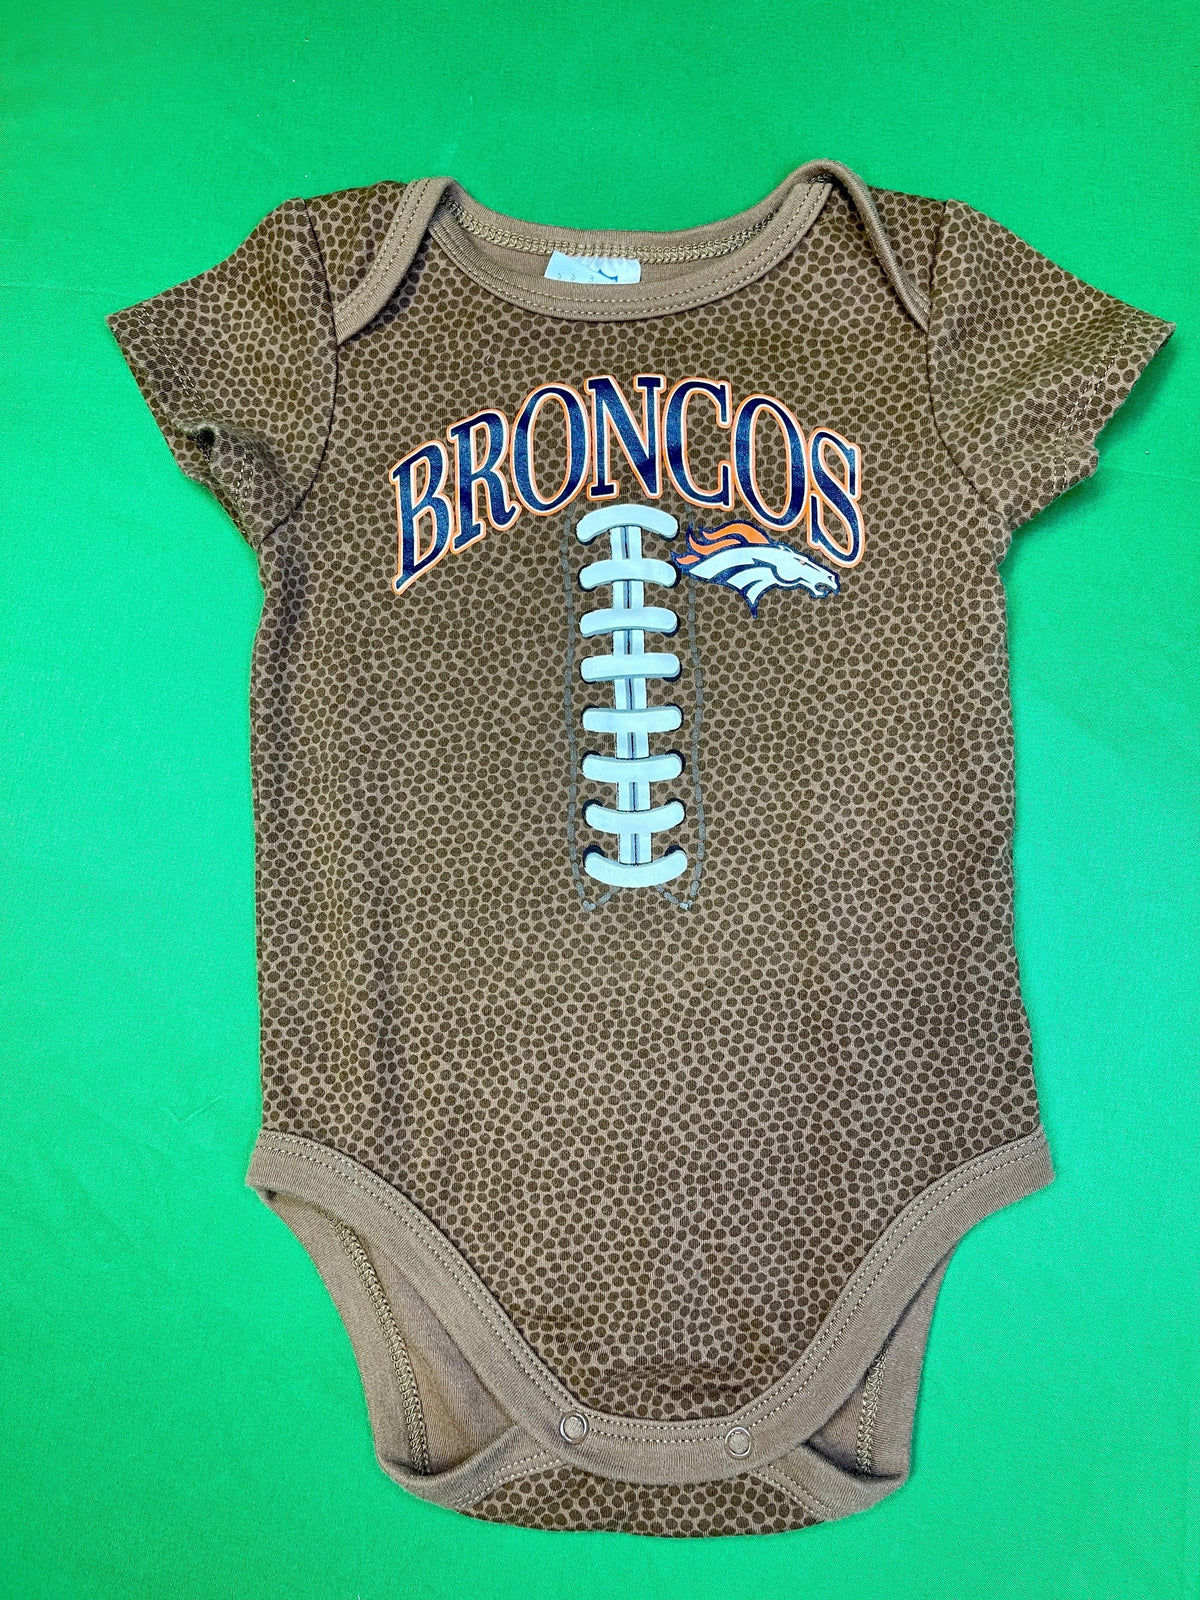 NFL Denver Broncos Football Design Bodysuit 6-12 months